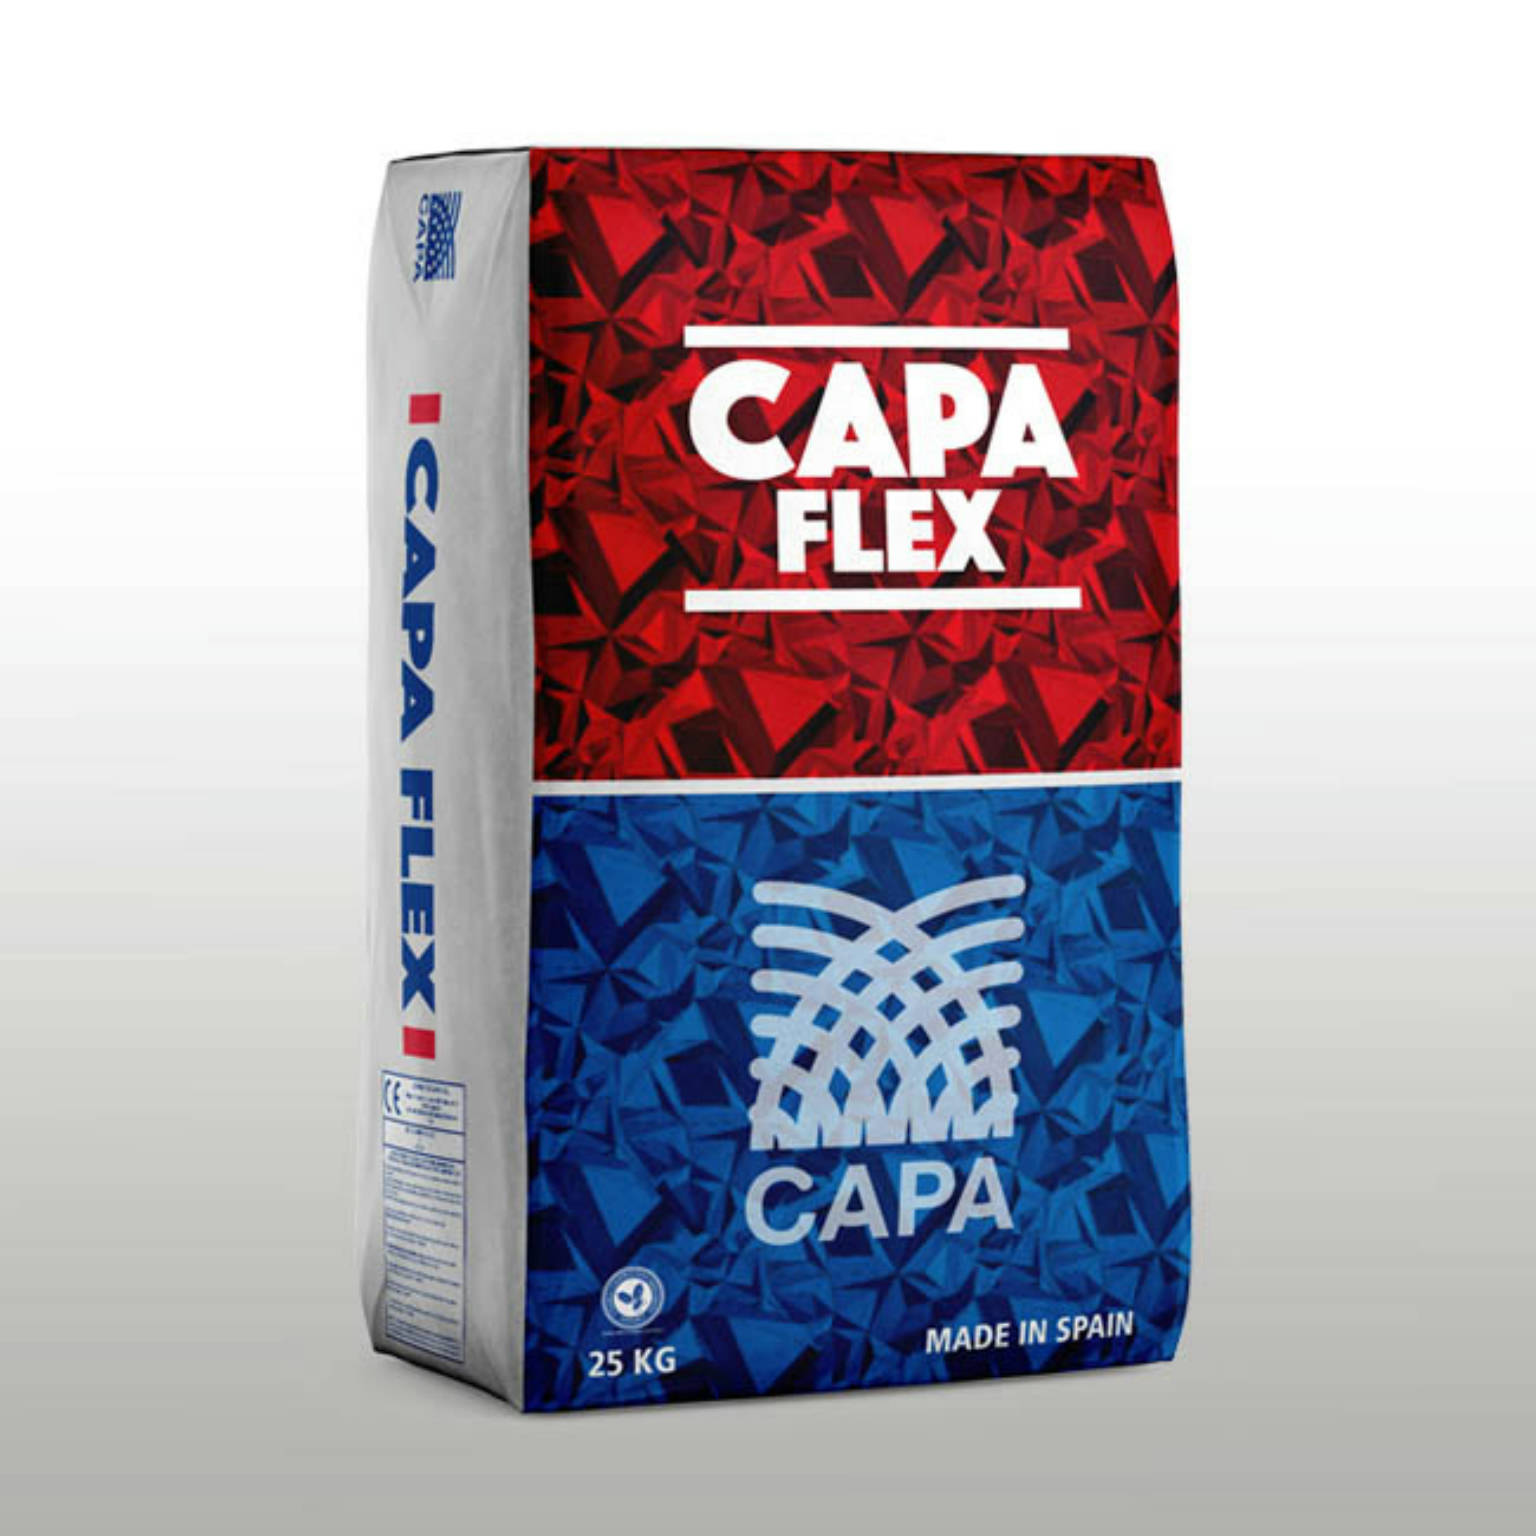 CAPA FLEX 25Kg  | Samboro